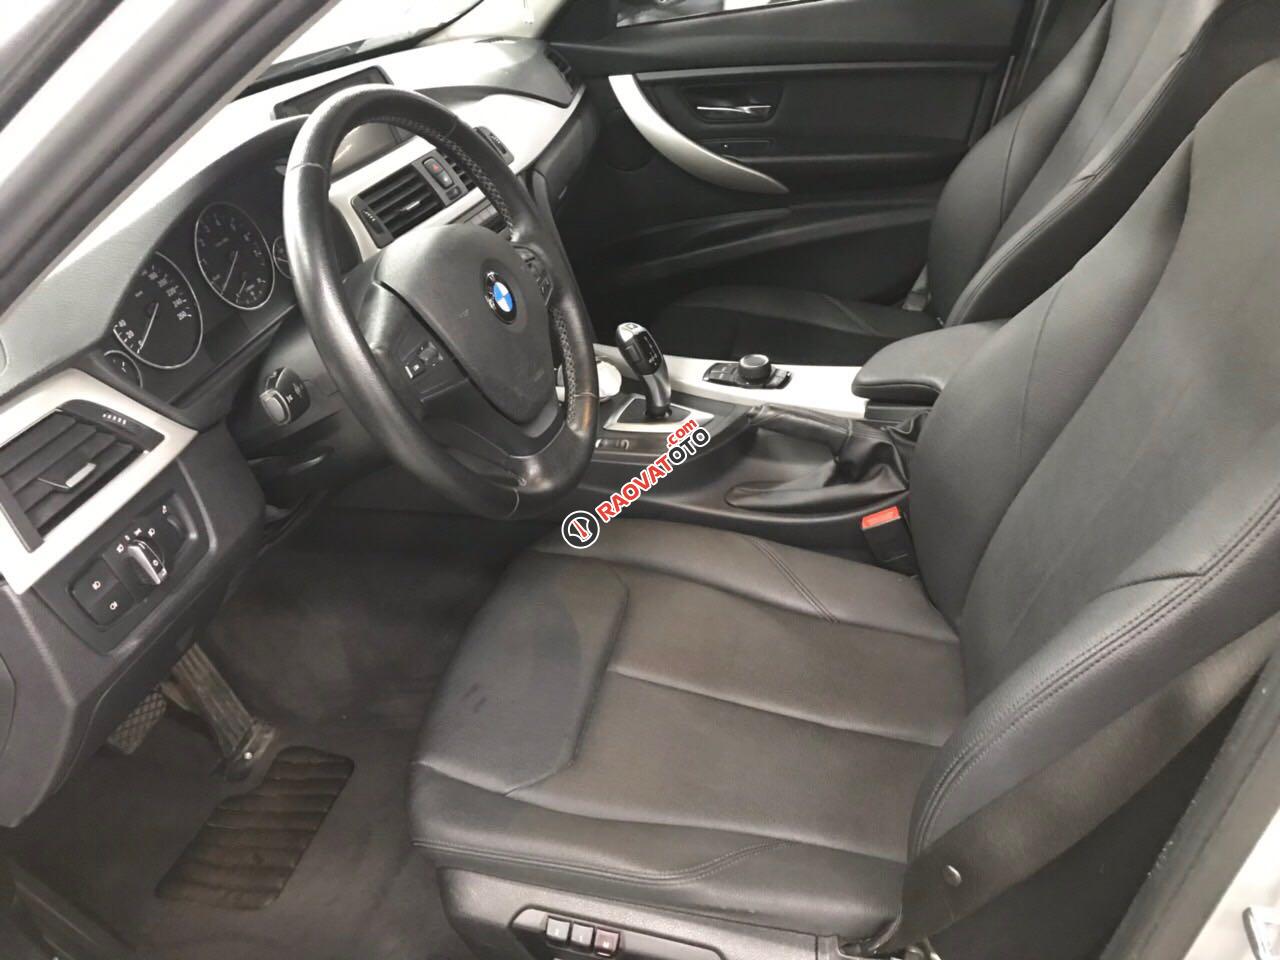 Cần bán xe BMW 3 Series 320i năm sản xuất 2012, màu bạc, nhập khẩu nguyên chiếc, giá 760tr-1